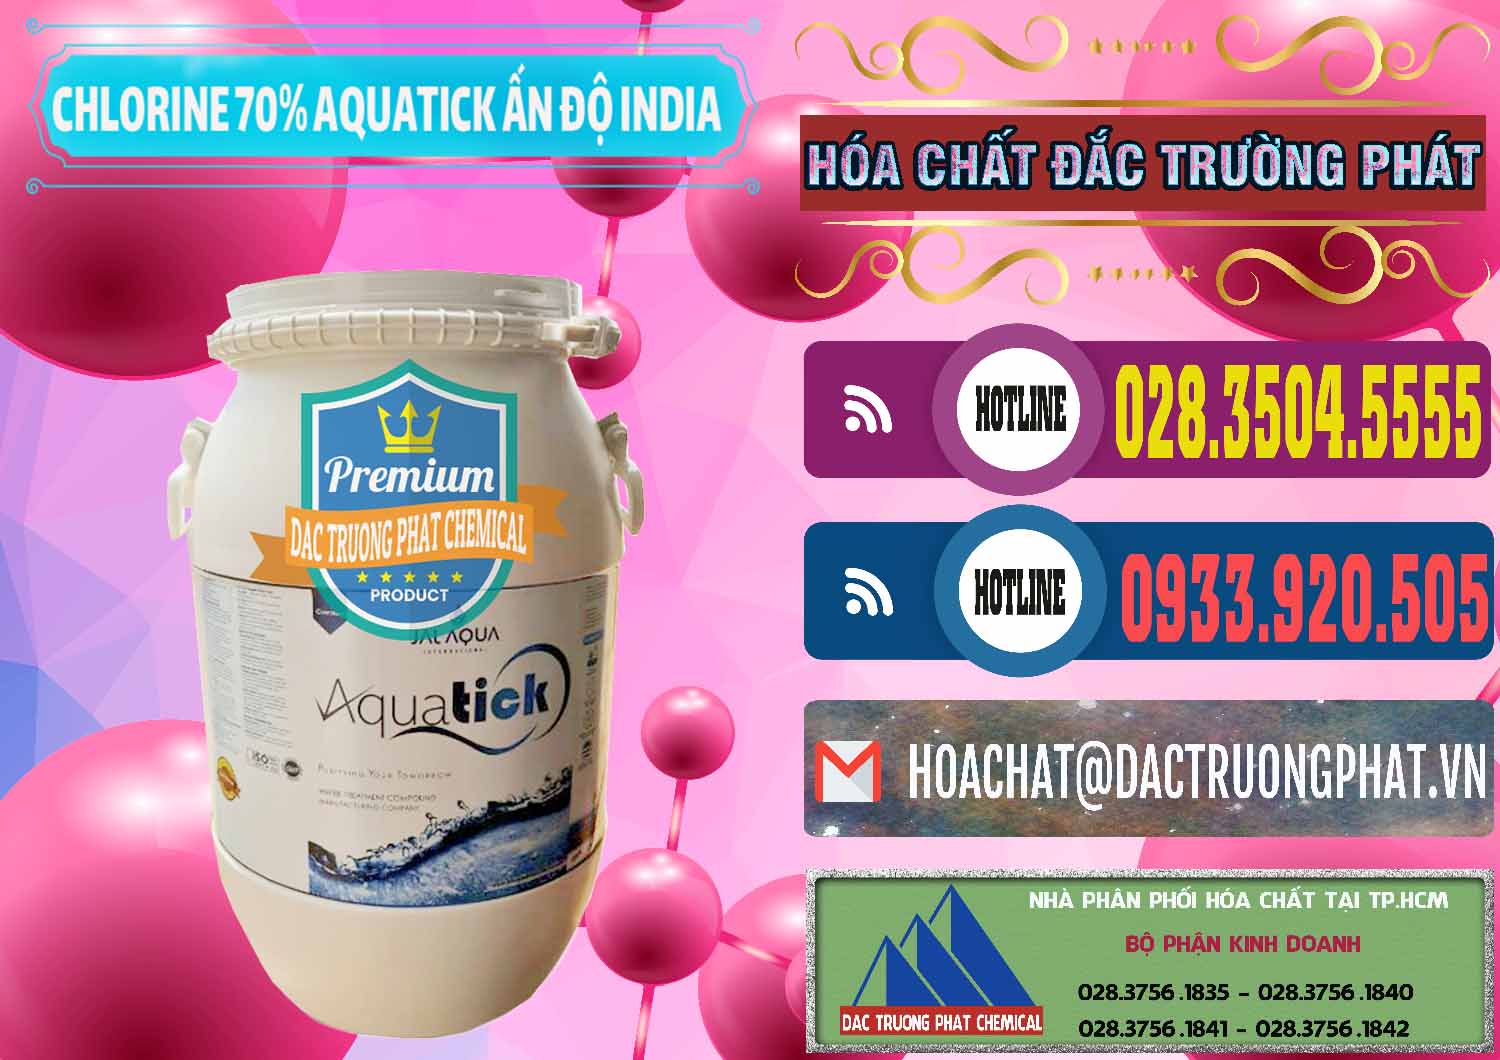 Chuyên bán - phân phối Chlorine – Clorin 70% Aquatick Jal Aqua Ấn Độ India - 0215 - Nơi nhập khẩu - cung cấp hóa chất tại TP.HCM - muabanhoachat.com.vn